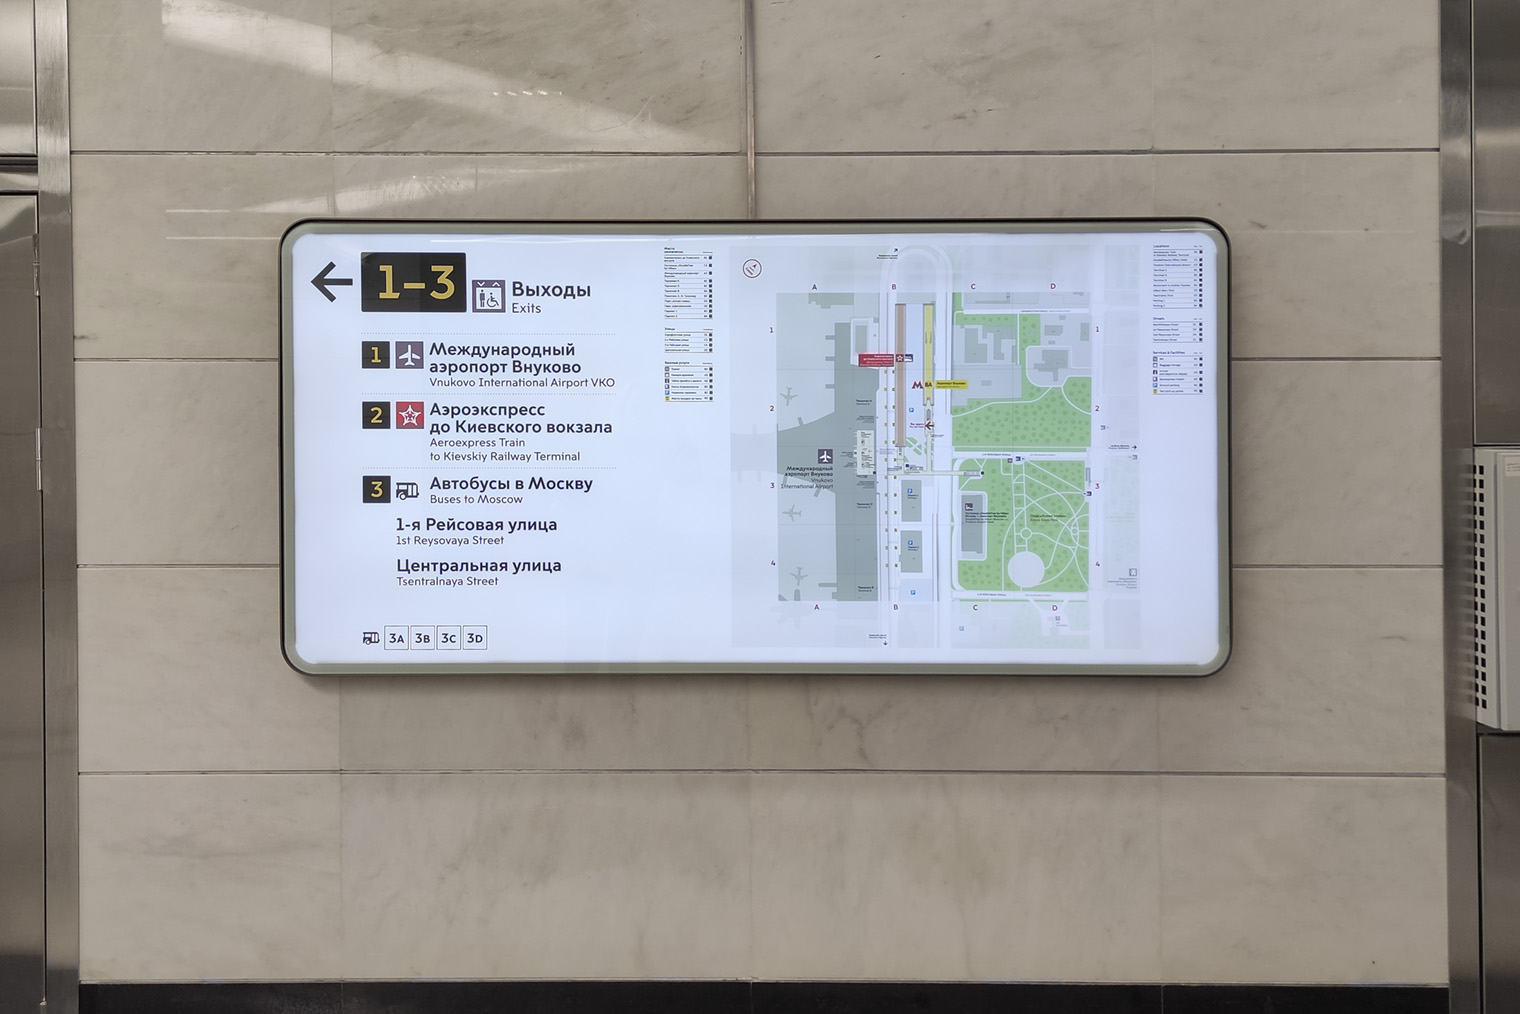 В вестибюле метро есть карта с подробным описанием выходов